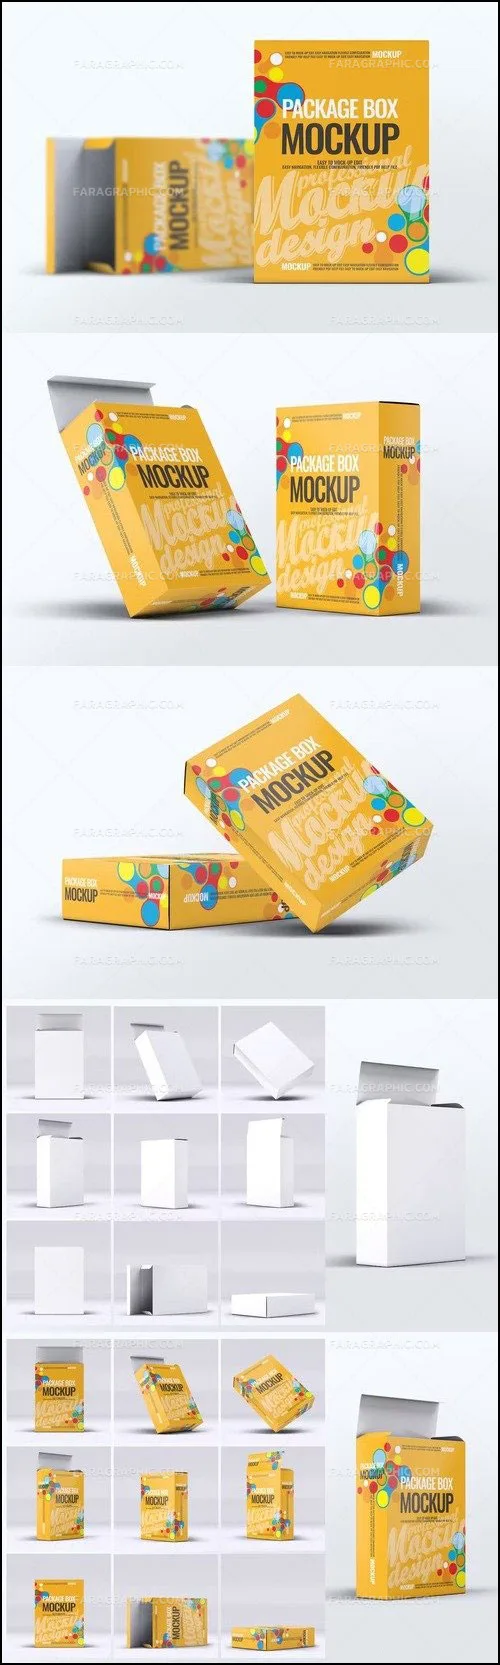 دانلود موکاپ فتوشاپ جعبه محصولات - شماره 8